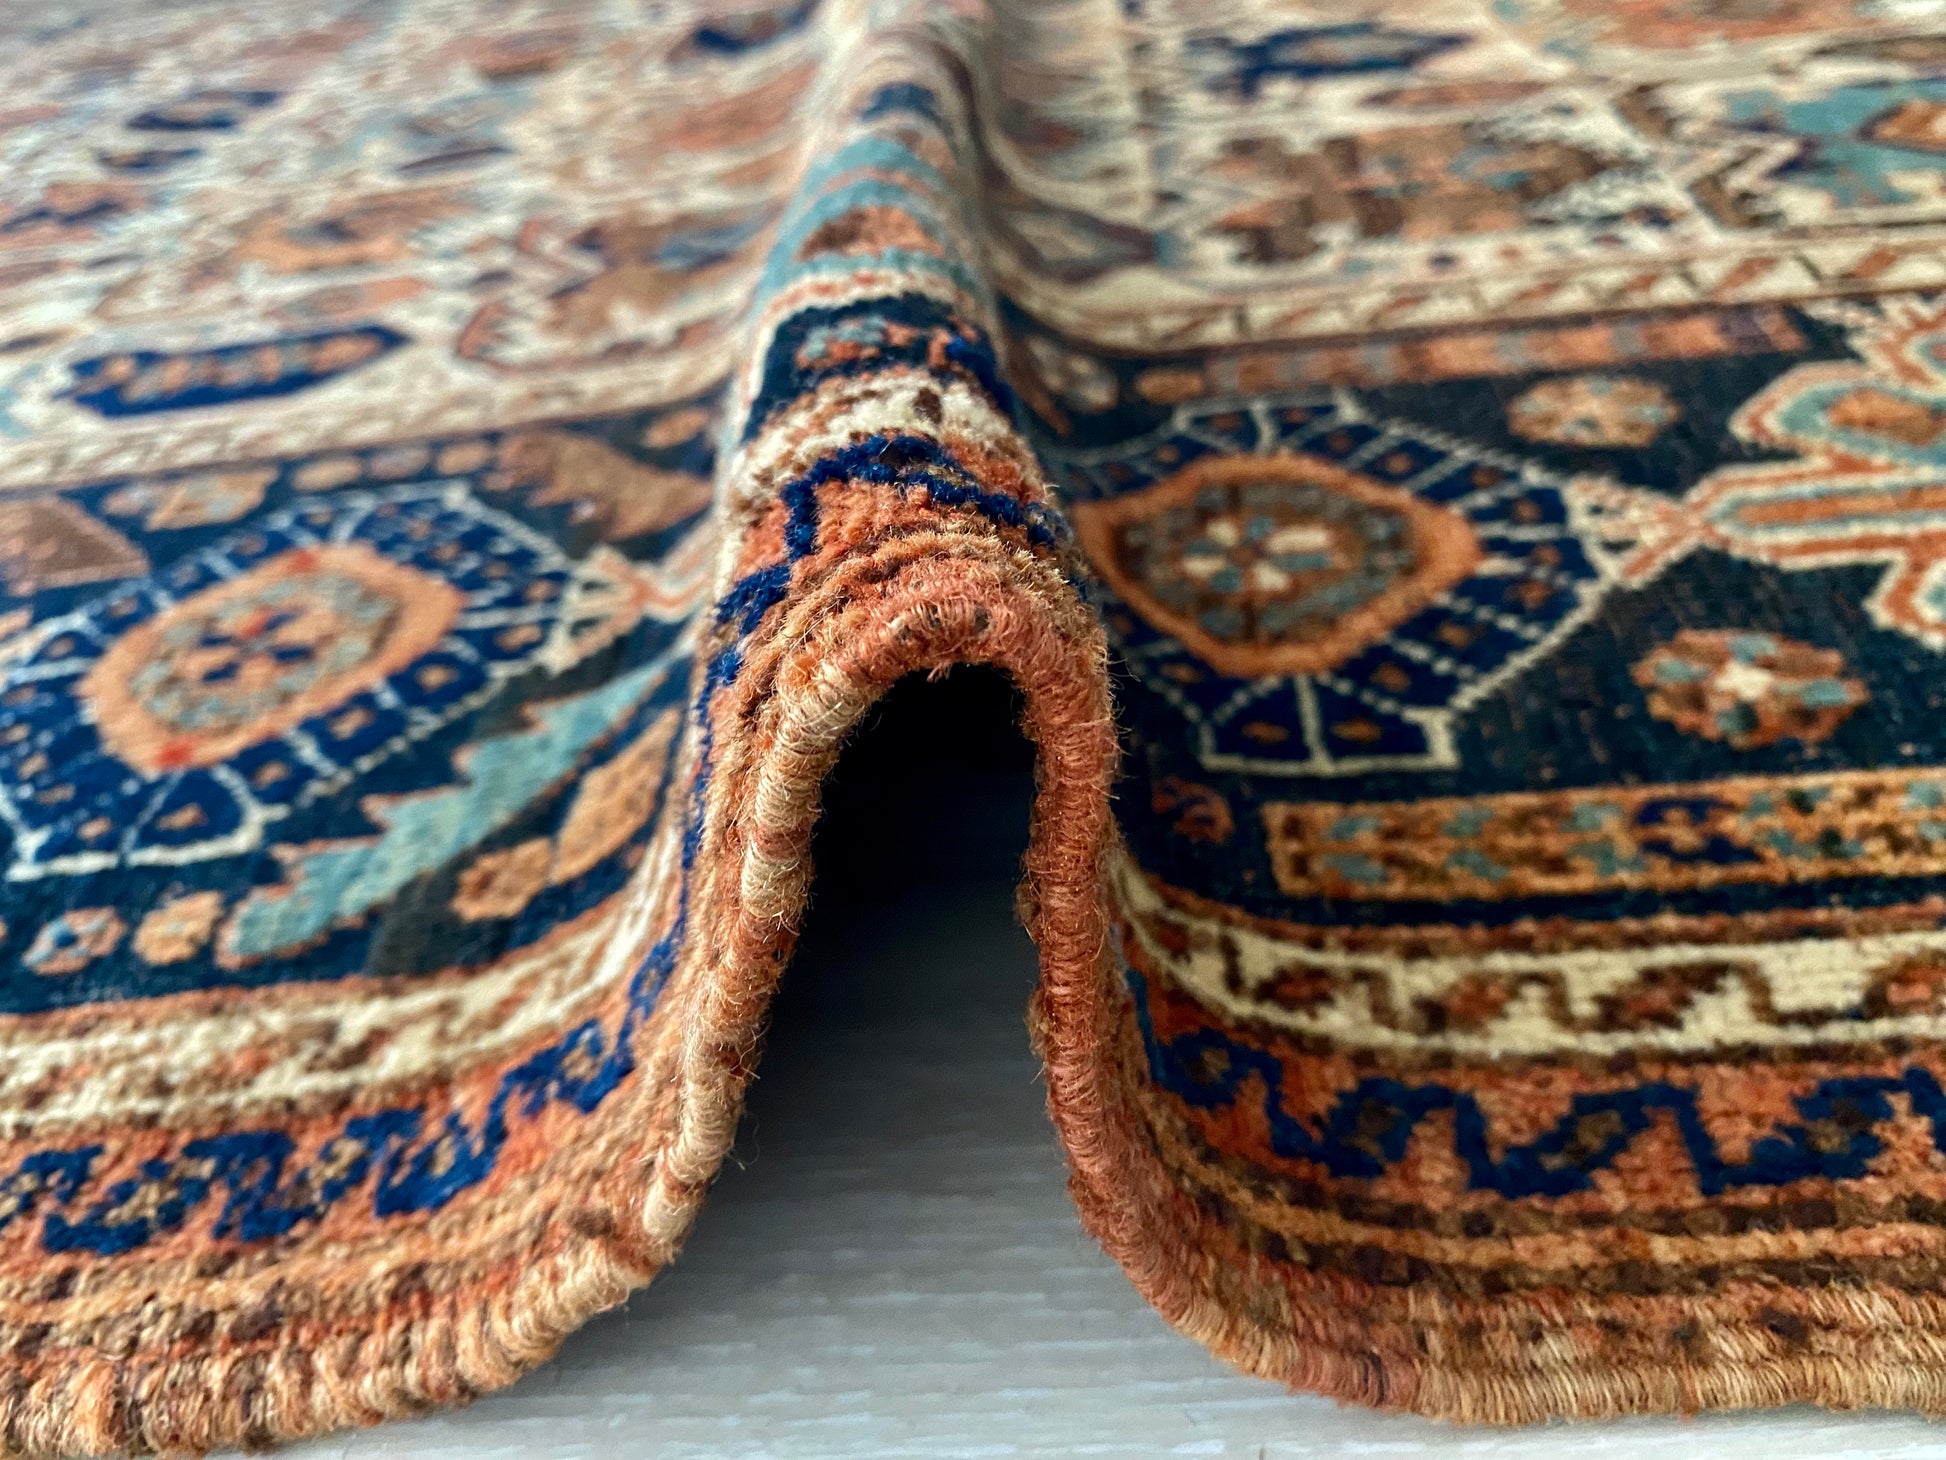 A-316 antique afshar rug – grace